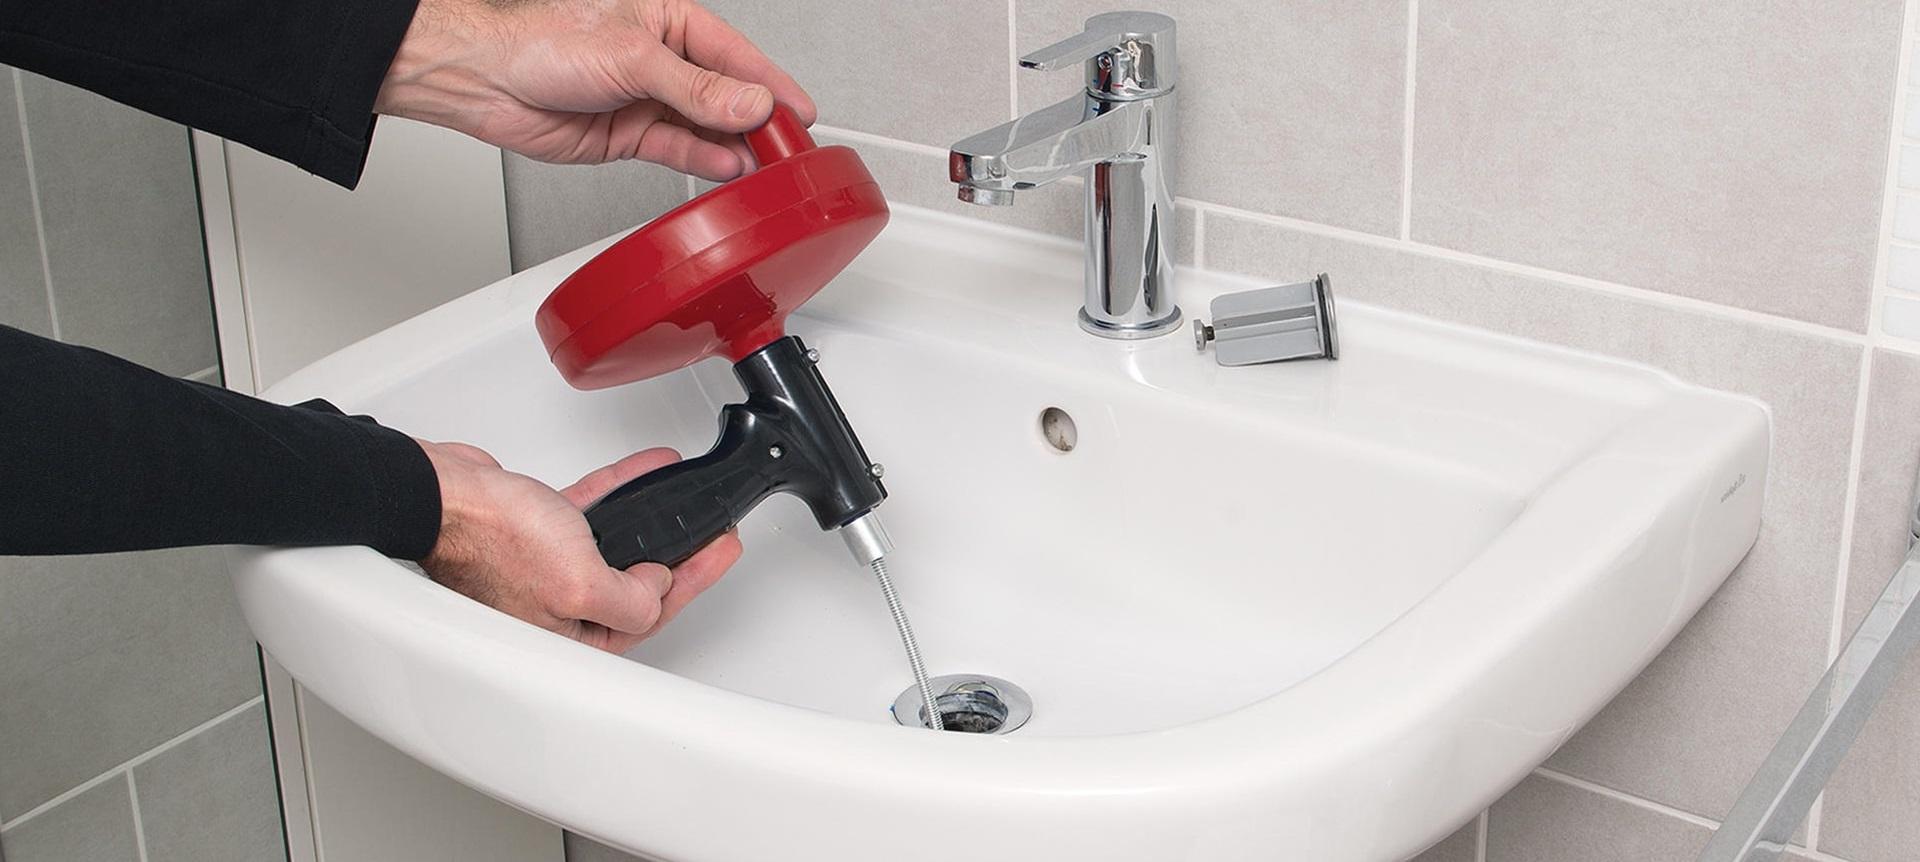 Méthodes alternatives pour déboucher votre canalisation de douche sans rien  acheter - PLOMBIER SOS Bruxelles